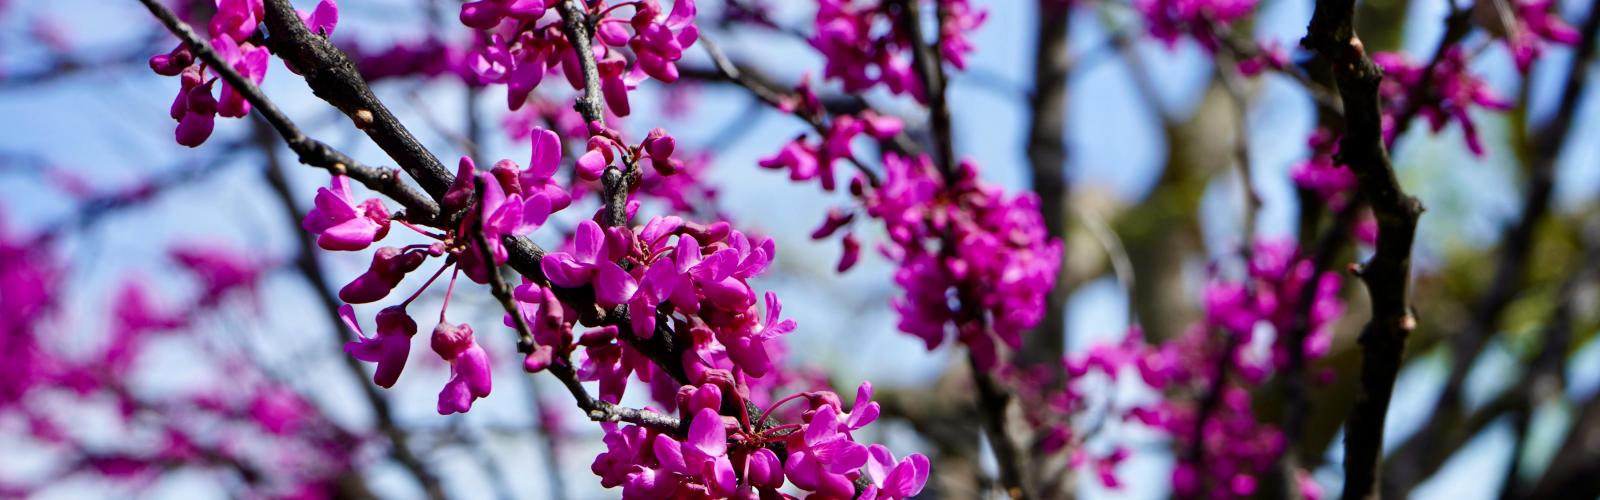 Arbre de Judée : Guide complet pour cultiver et admirer sa floraison spectaculaire